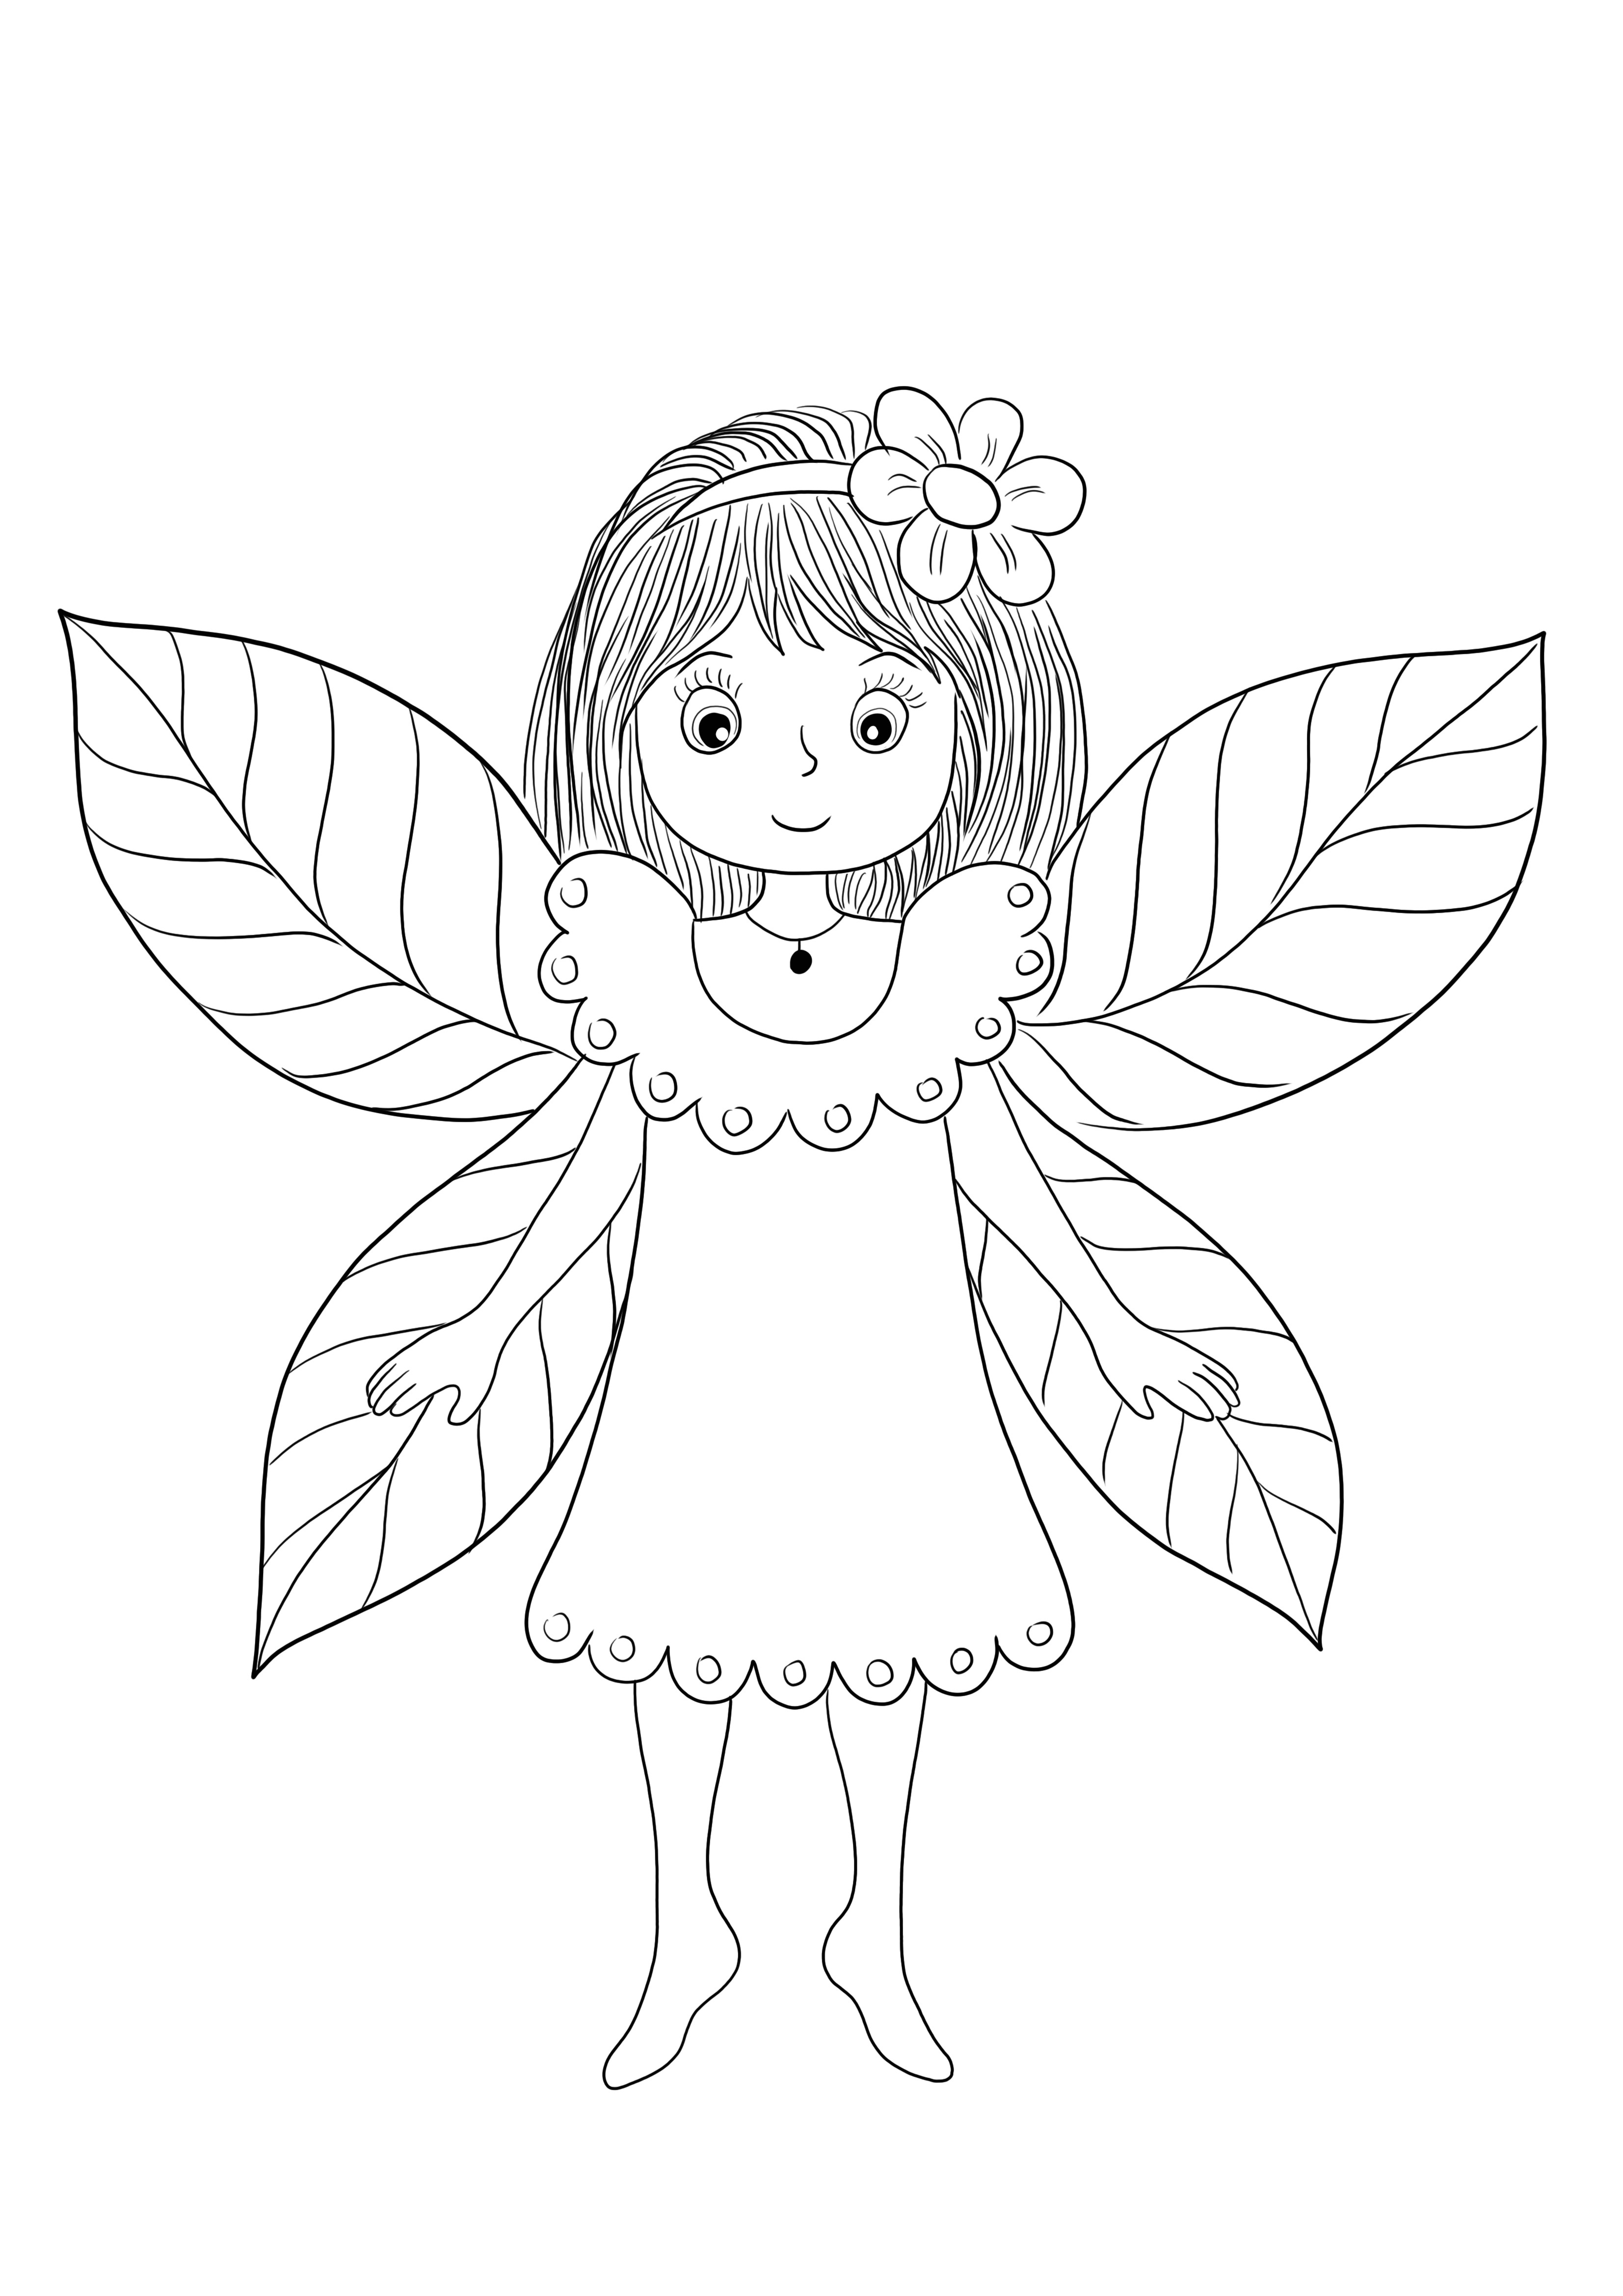 Fairy with Wings on valmis ja vapaasti tulostettavaksi ja väritettäväksi